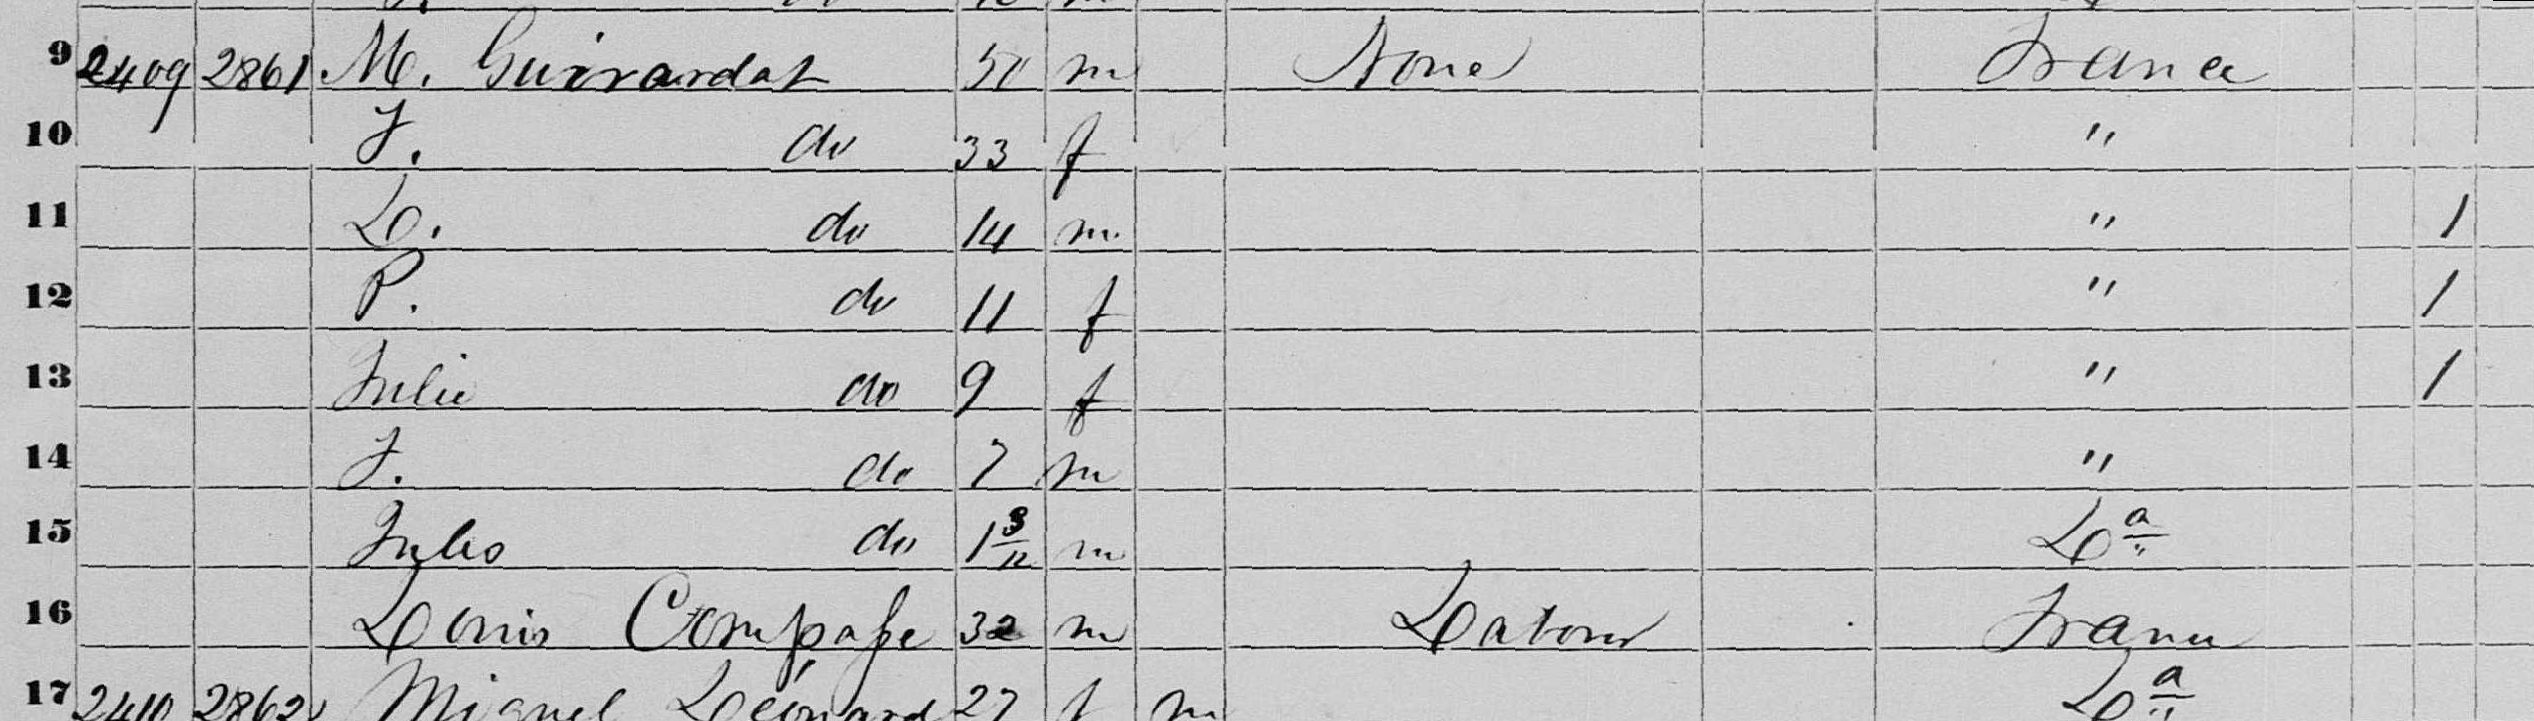 census 1850